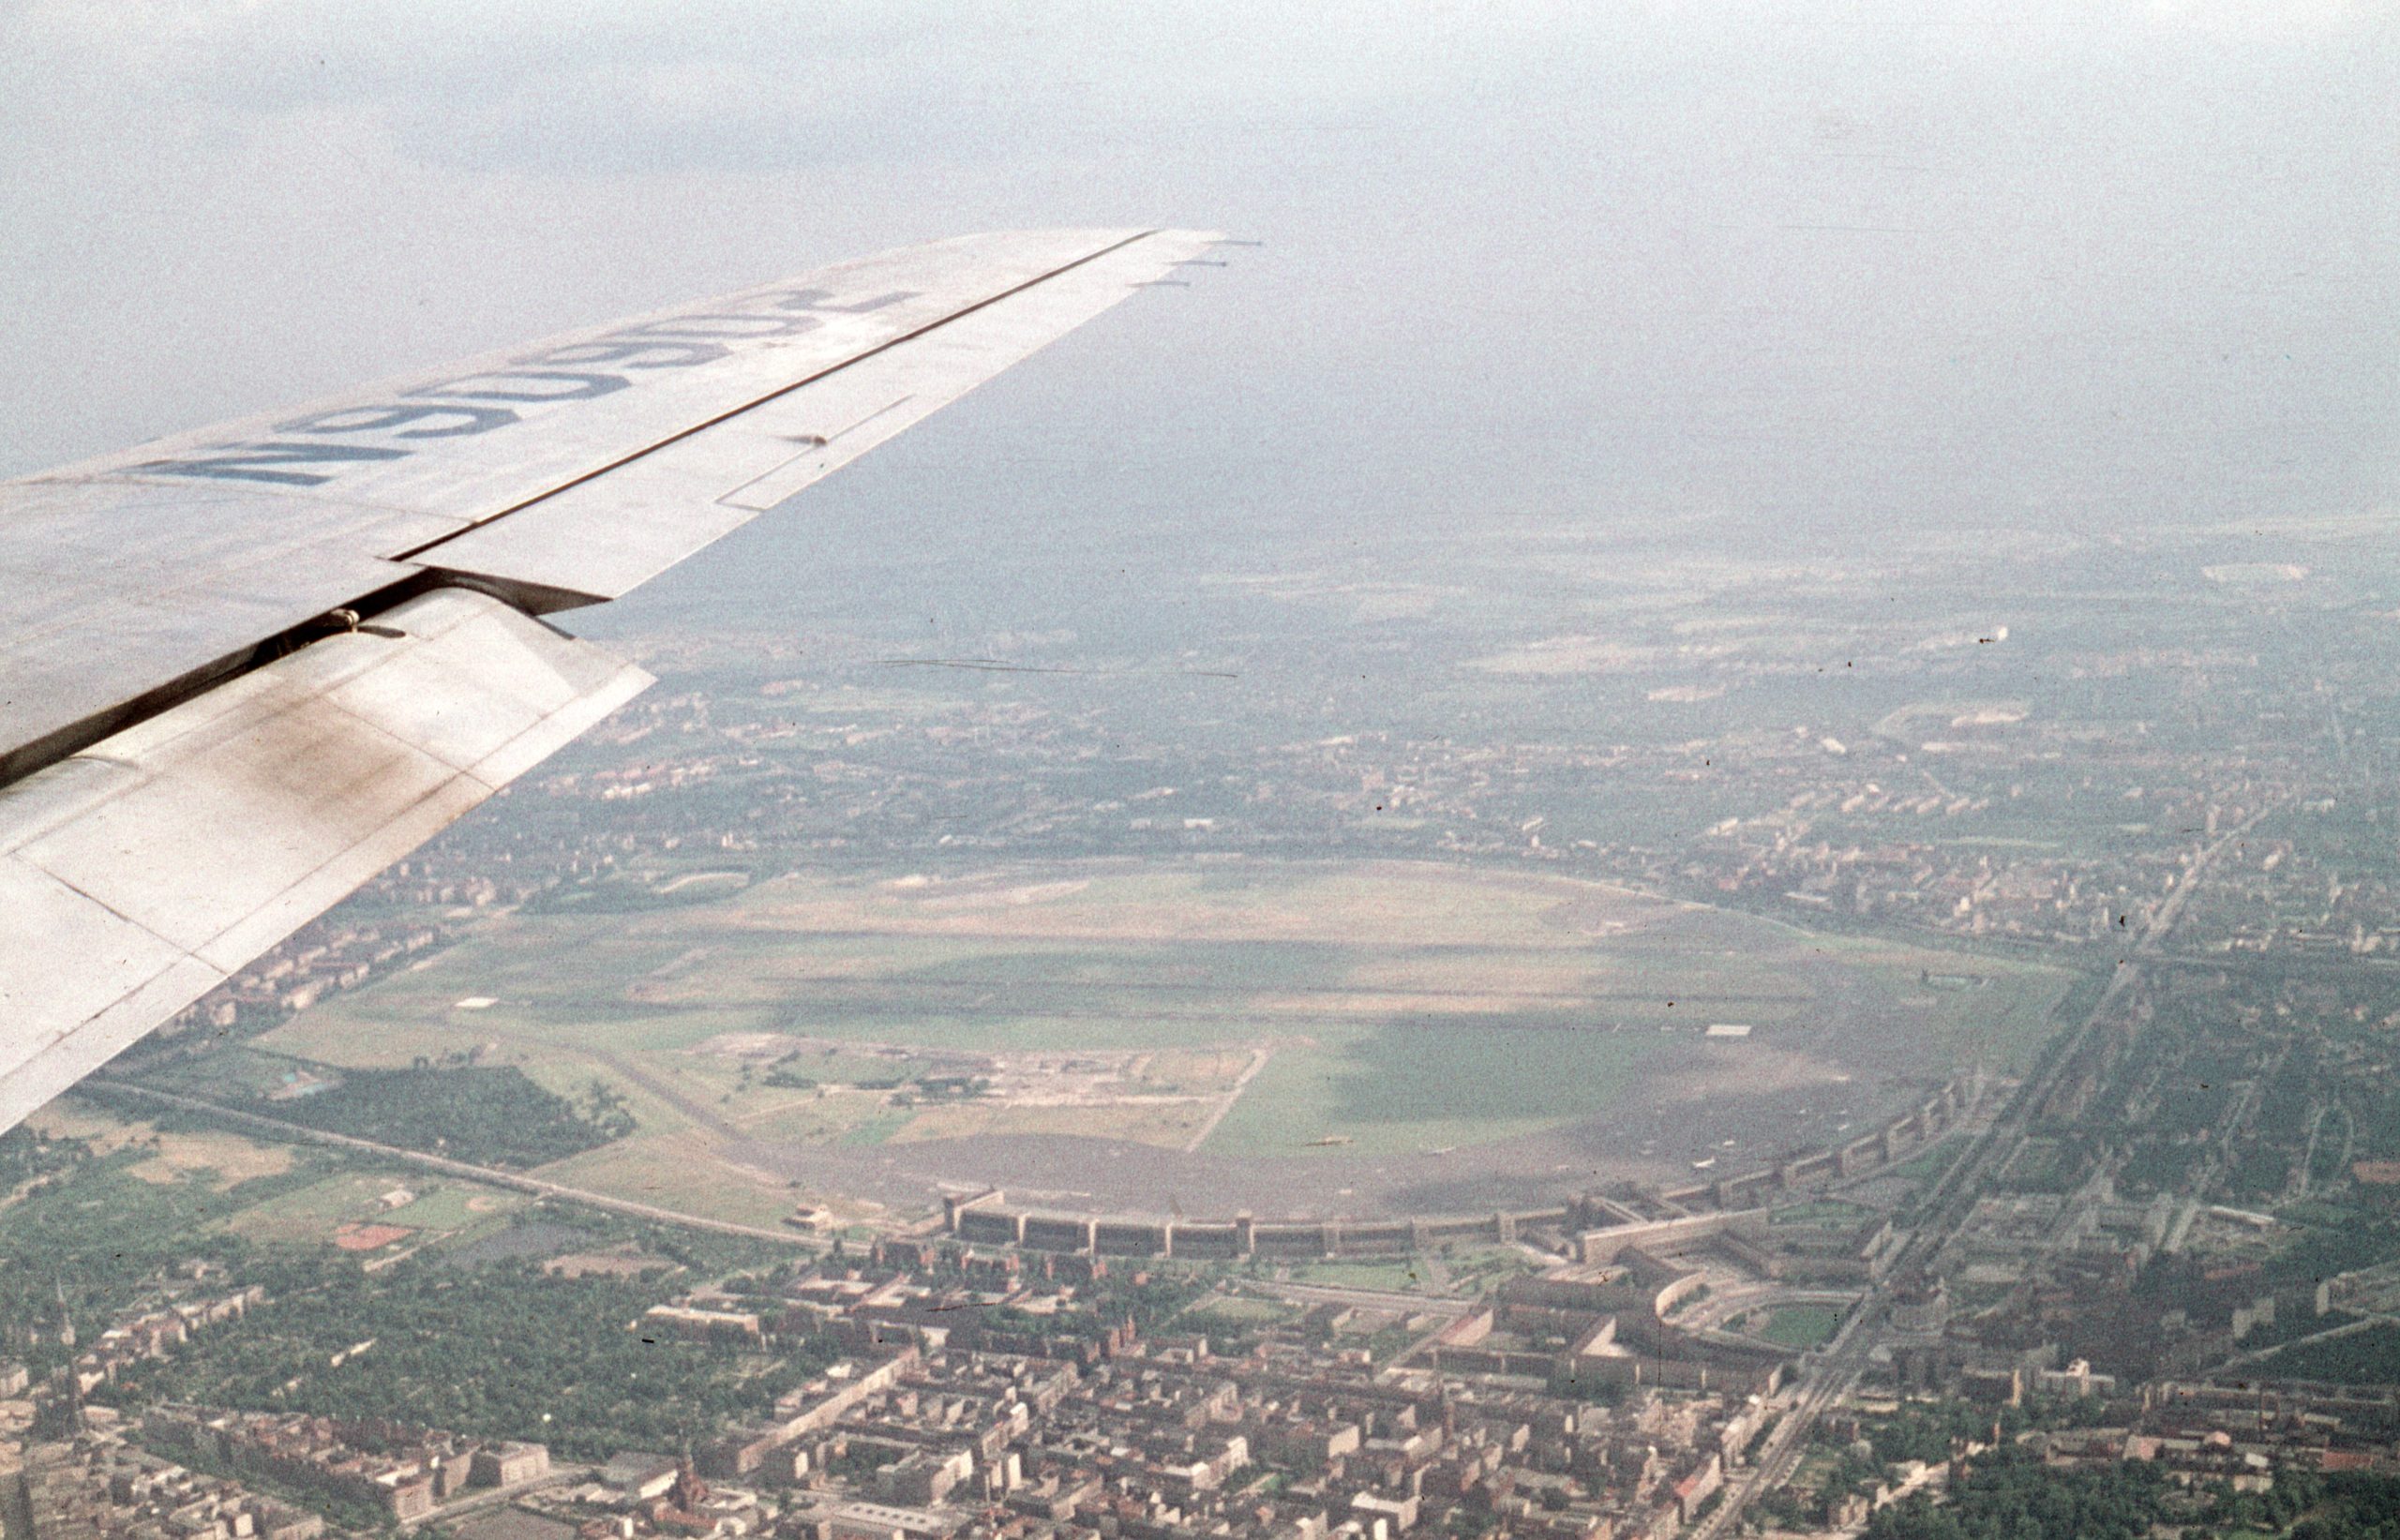 Landeanflug auf den Zentralflughafen, circa 1958. Fotos wie dieses konnte man vom Tempelhofer Feld bis 2008 machen. Foto: Imago/Gerhard Leber